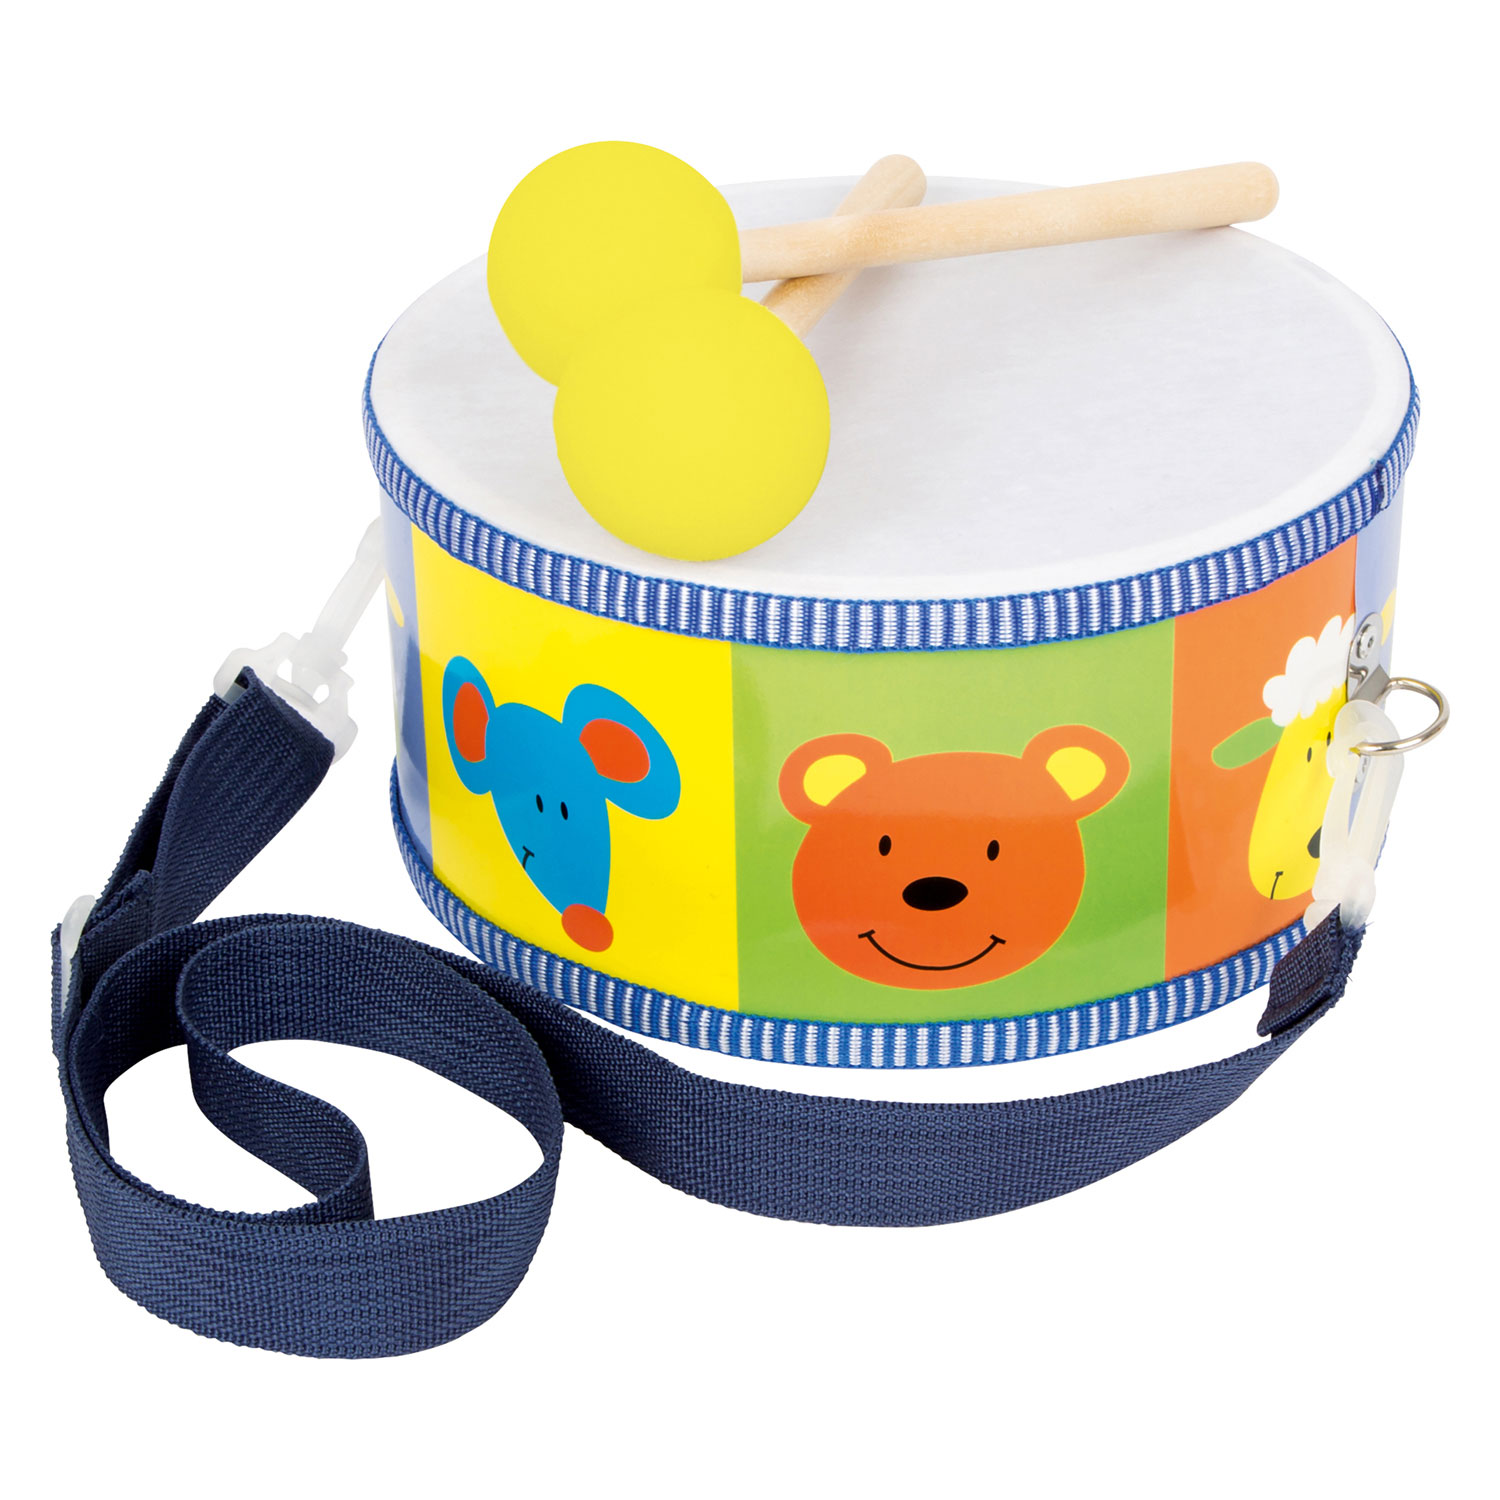 Tambour pour bébé baby clementoni musique interactif jouet